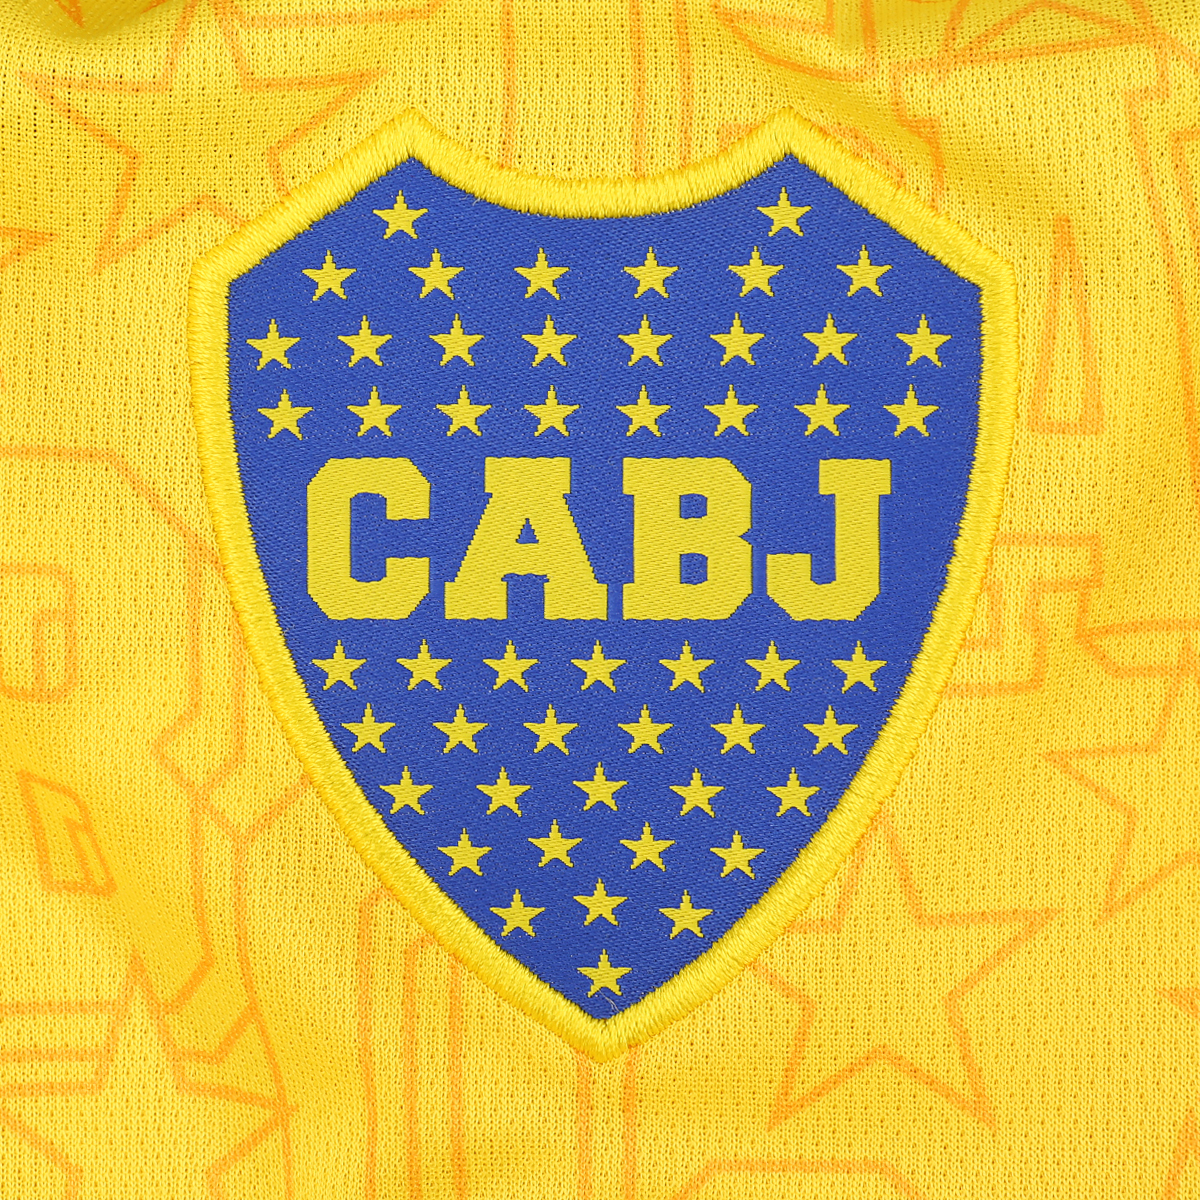 Camiseta adidas Boca Juniors Tercera,  image number null